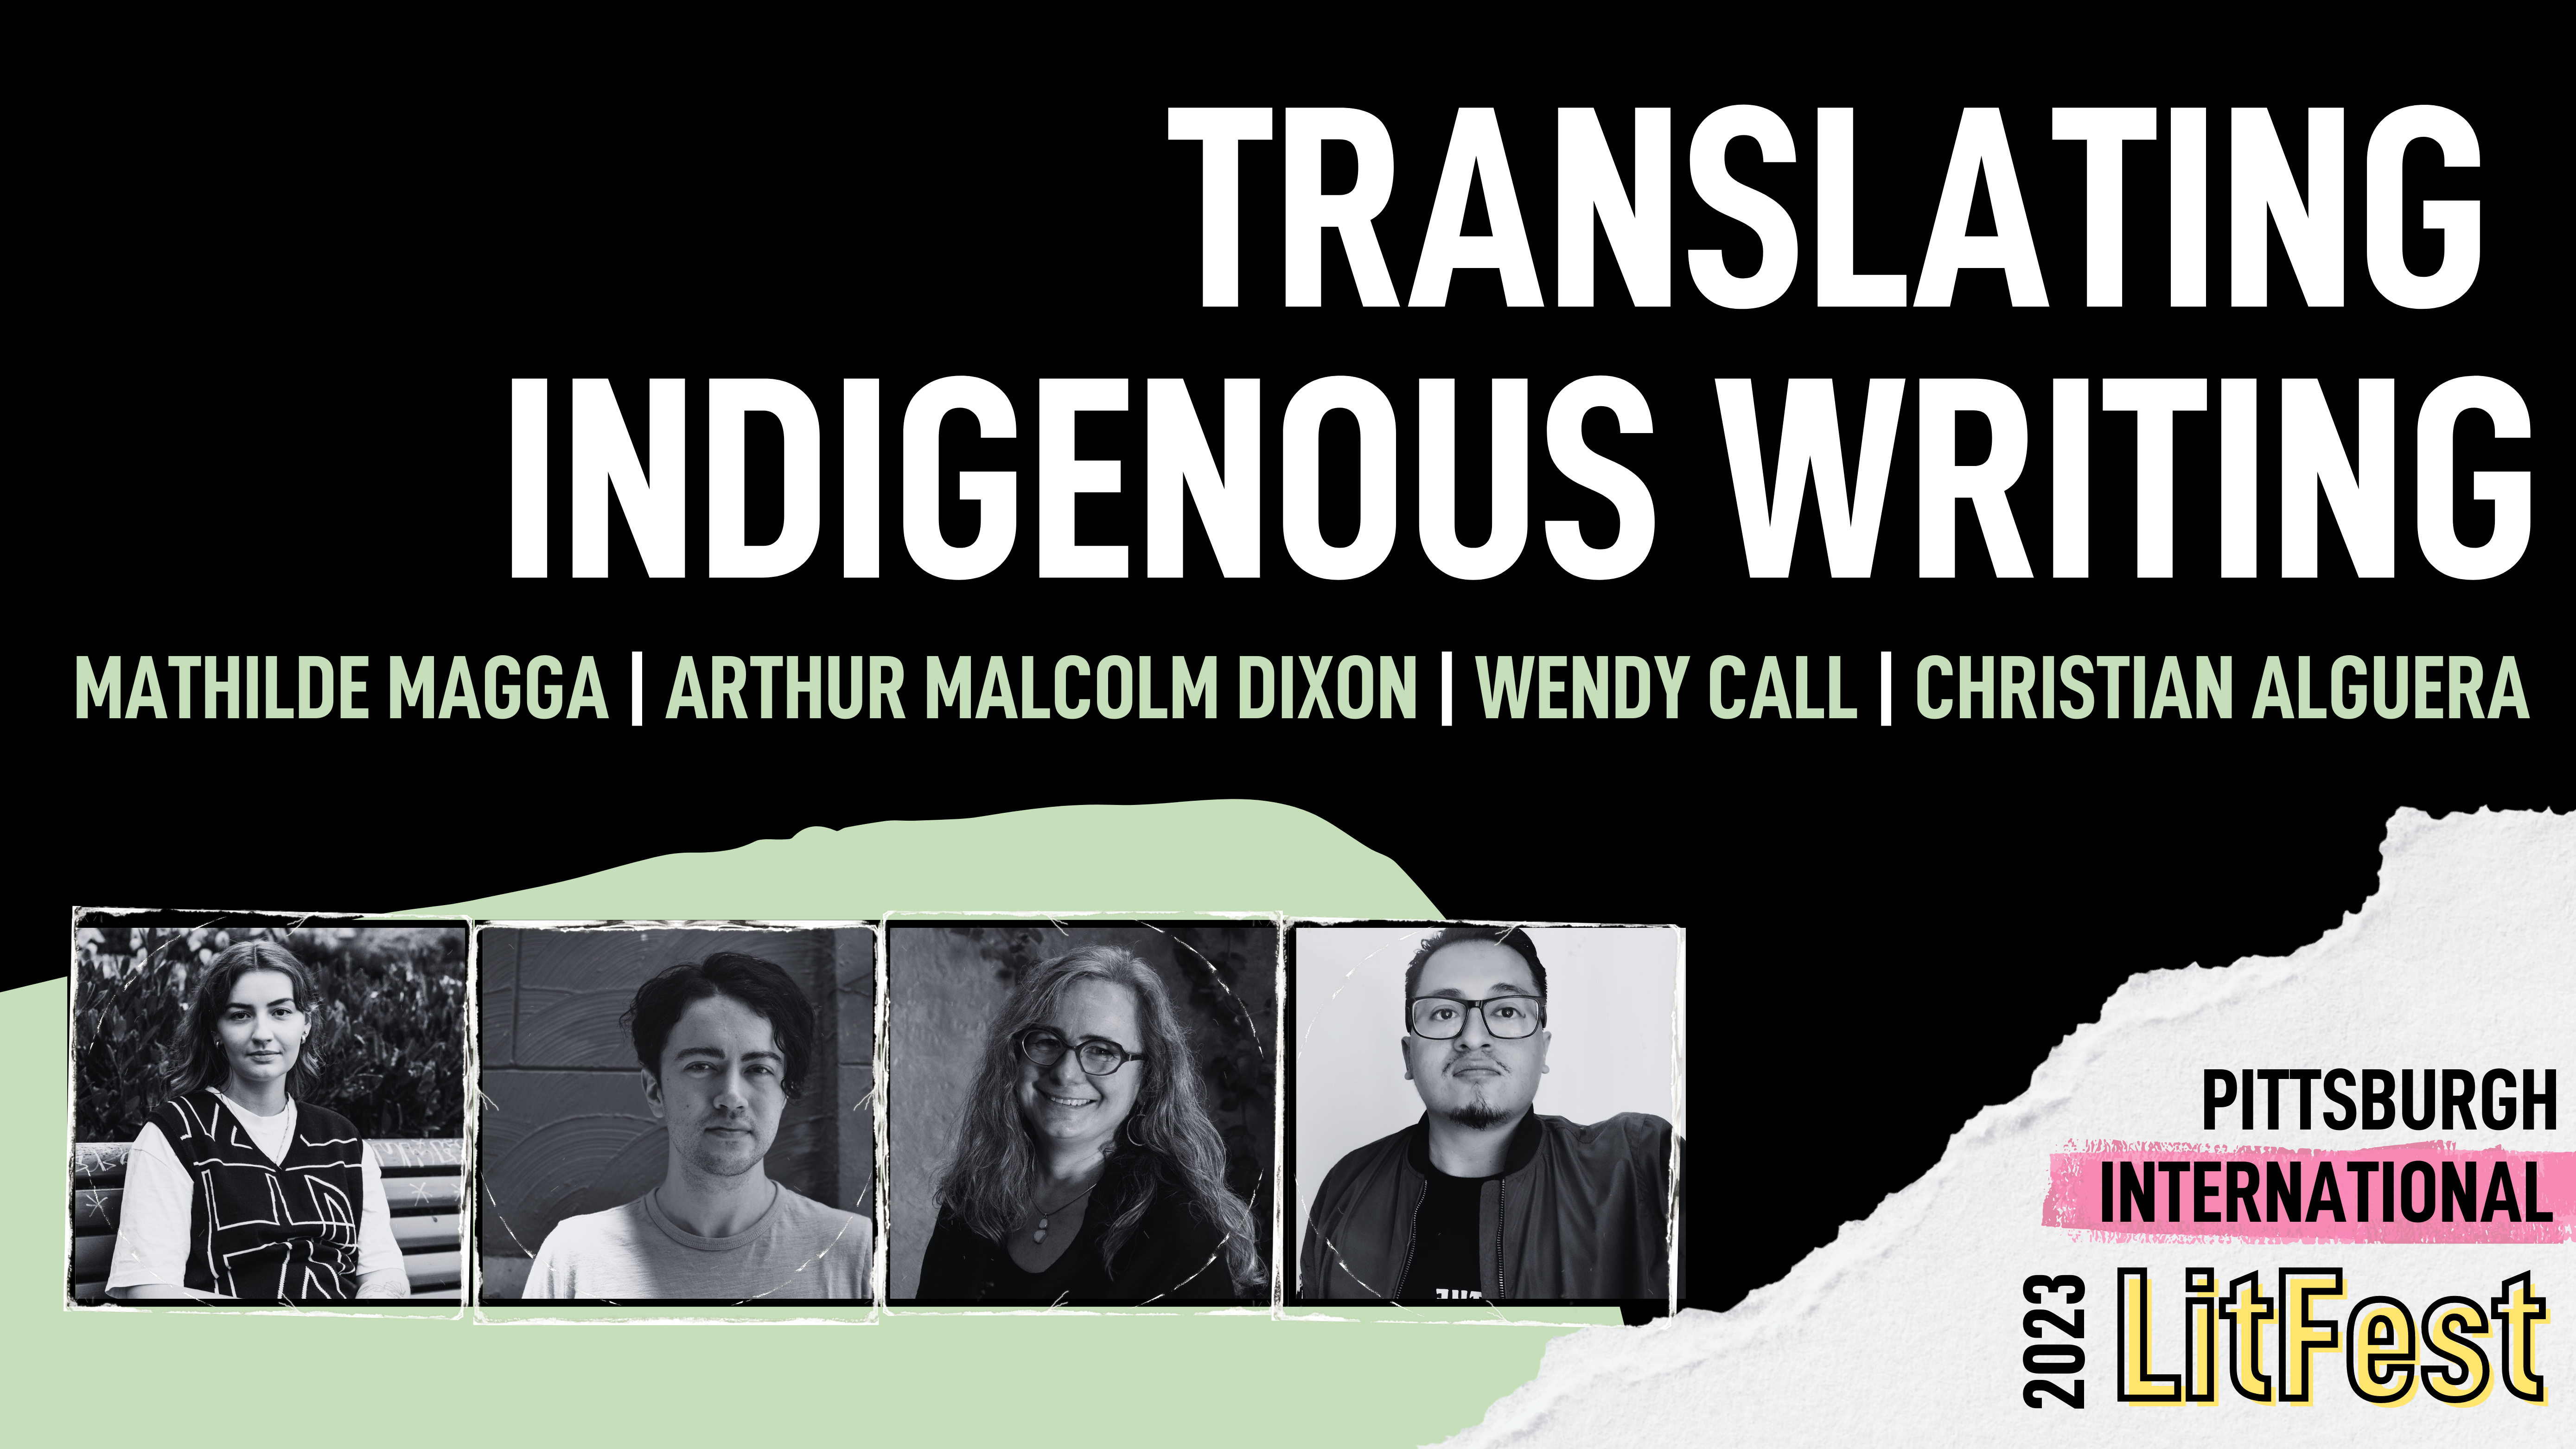 Translating Indigenous Writing